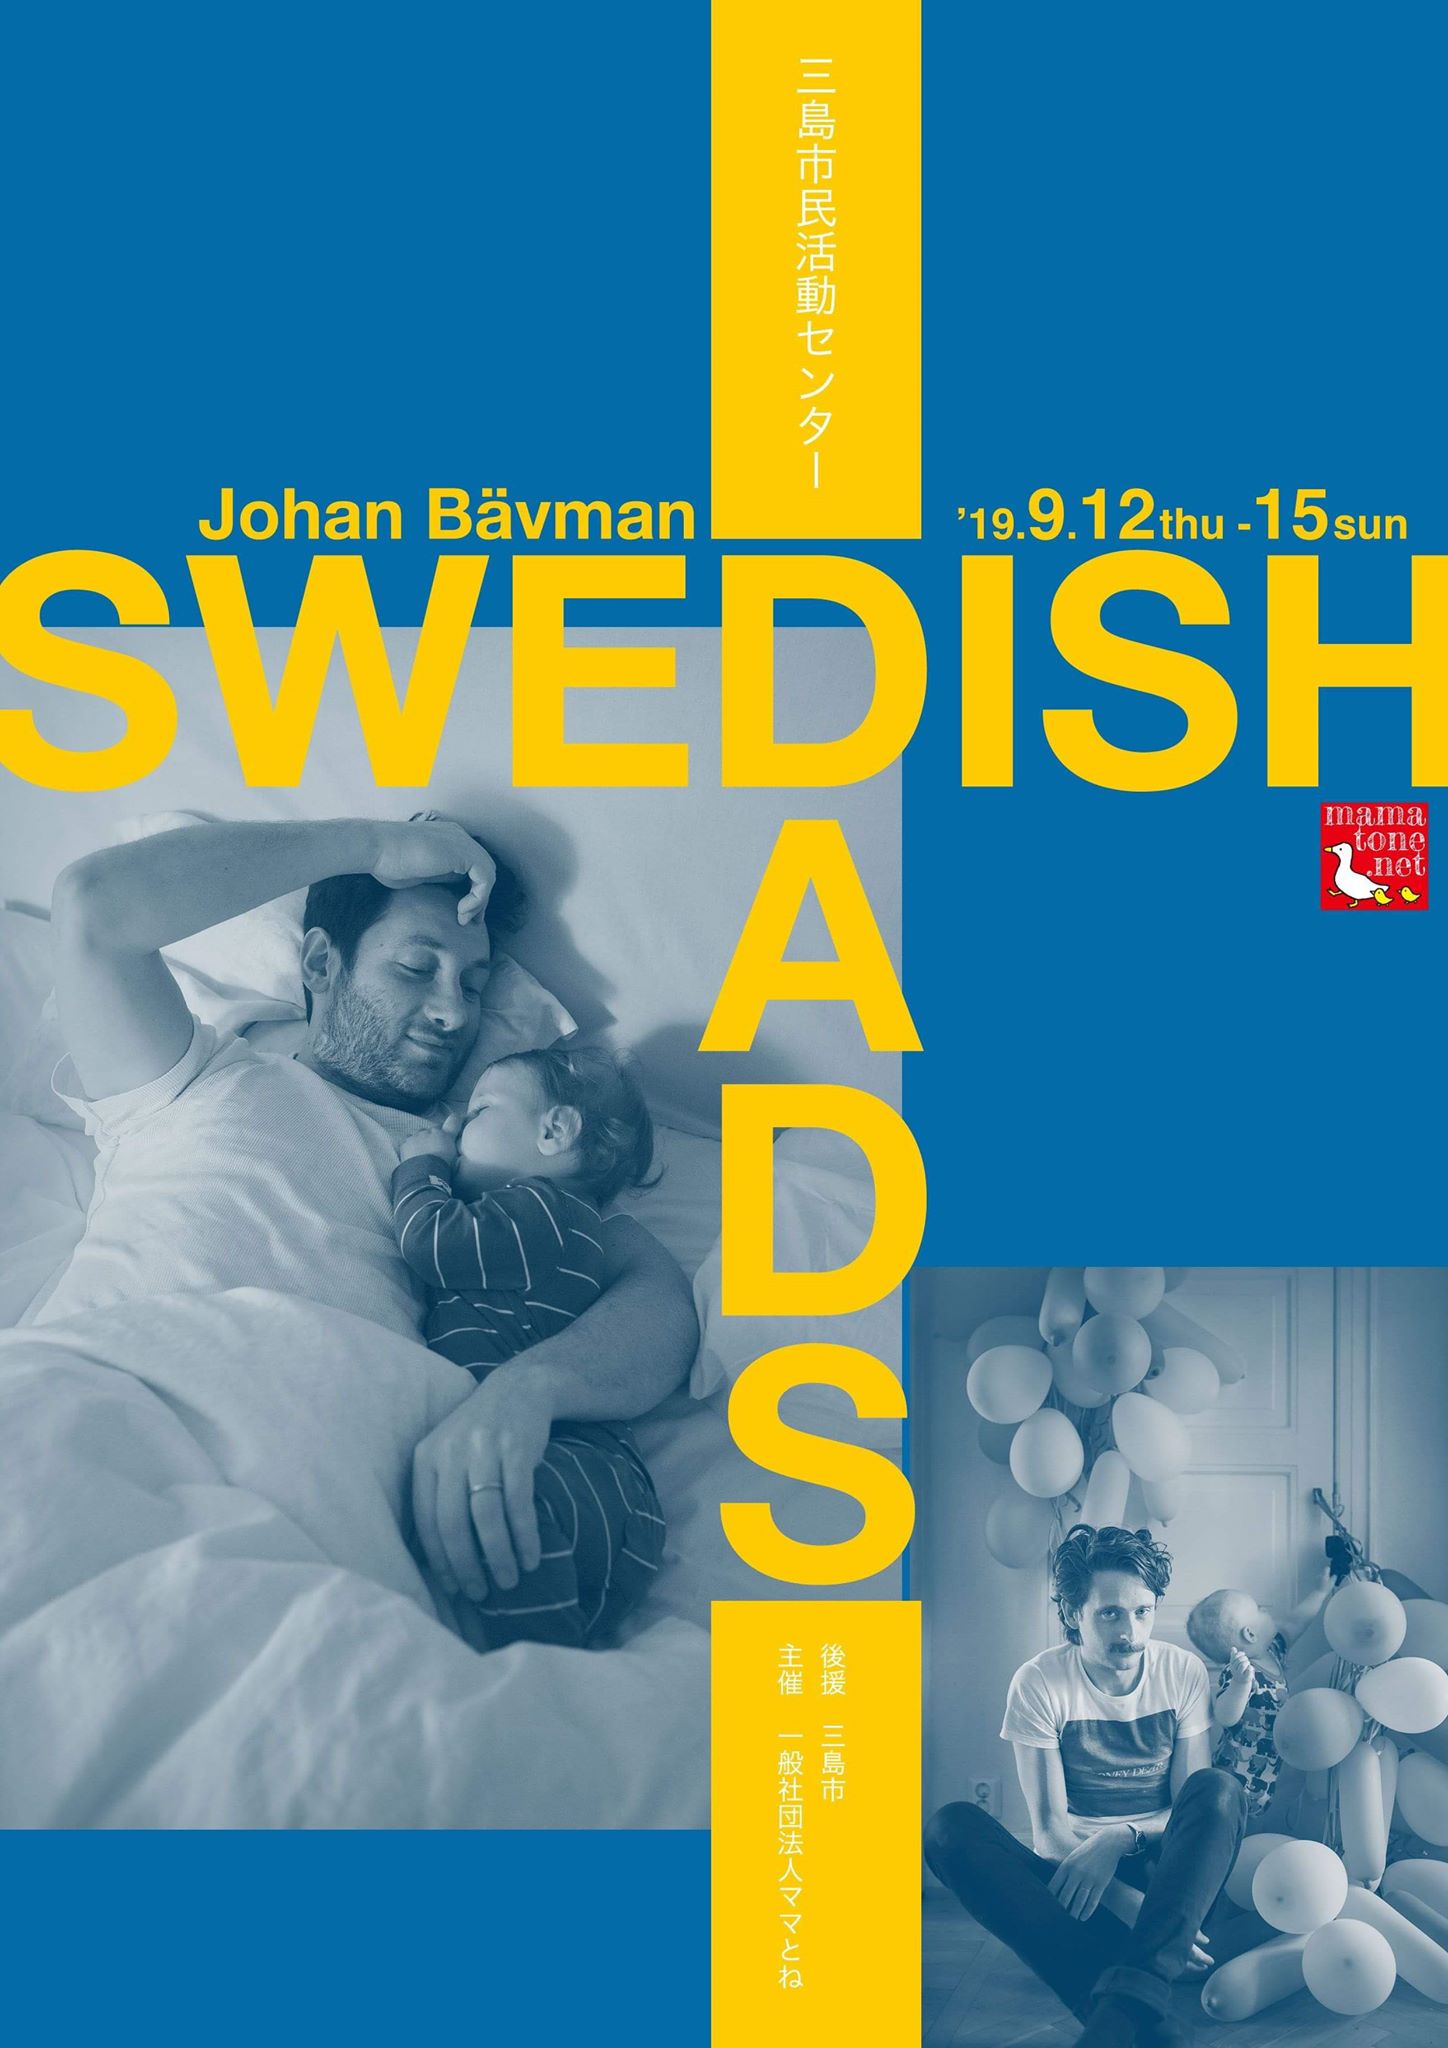 写真展「スウェーデンのパパたち」